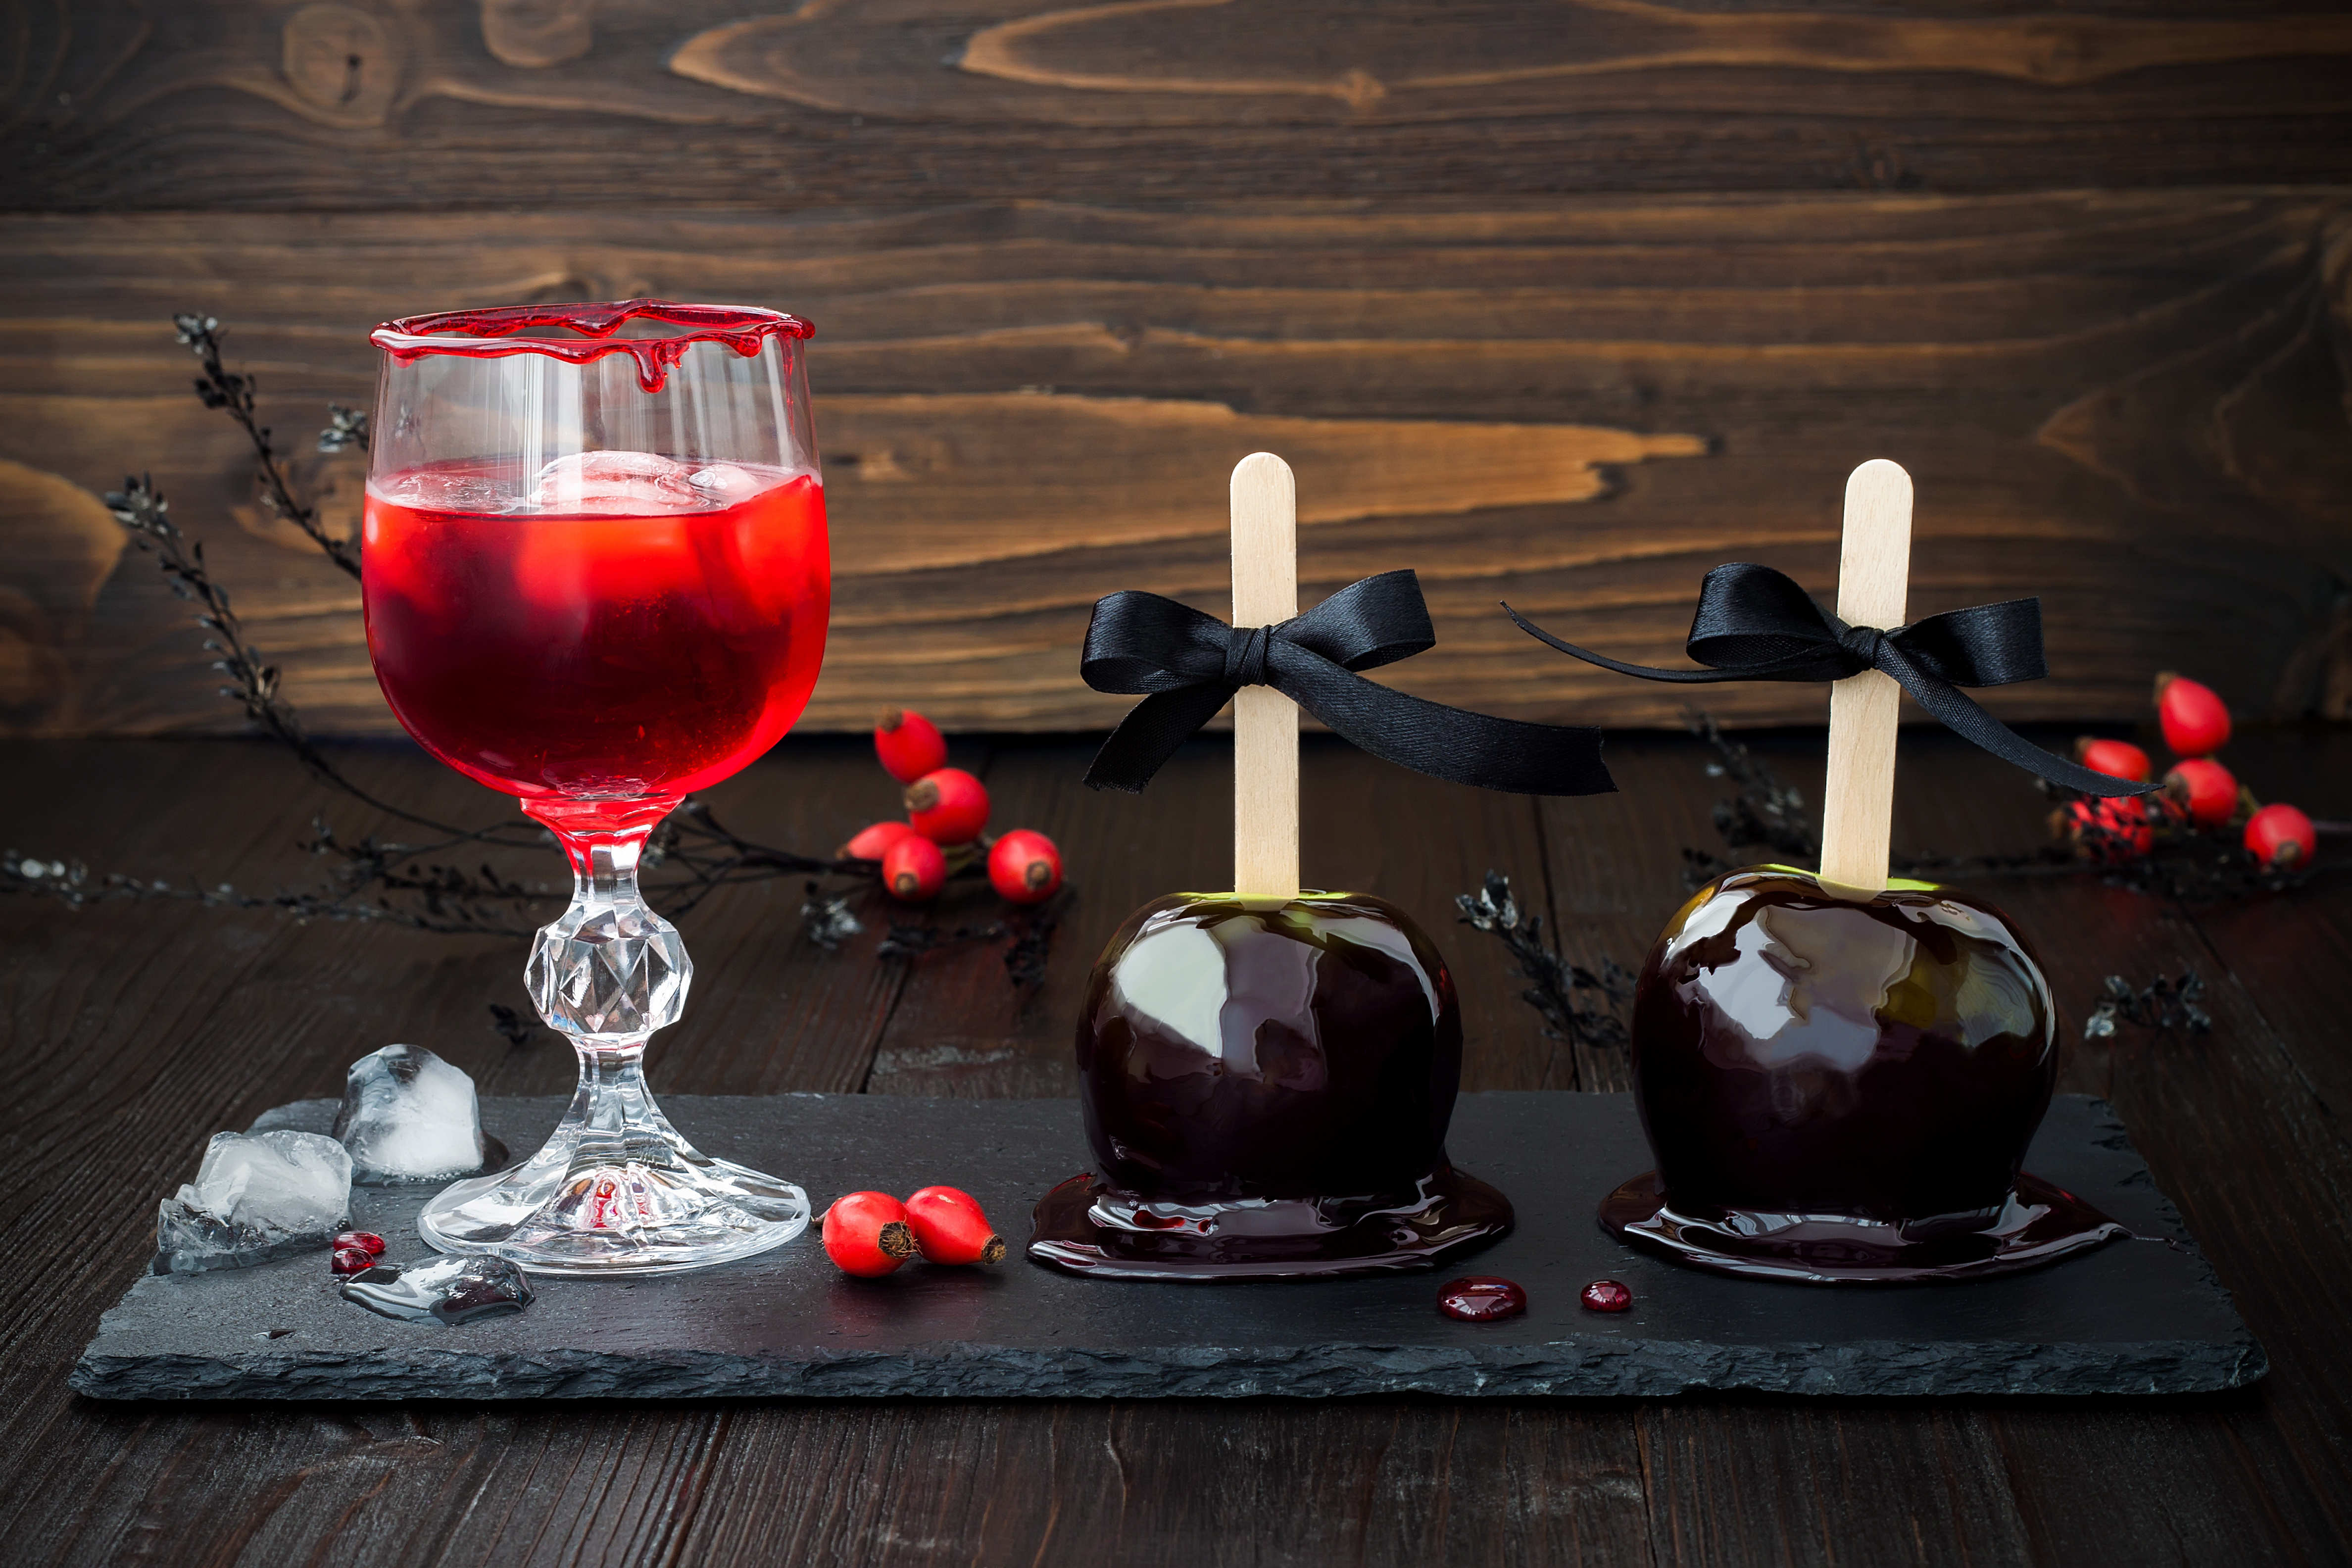 Préparer une boisson sanglante pour Halloween - On adore - Blog La Foir'Fouille